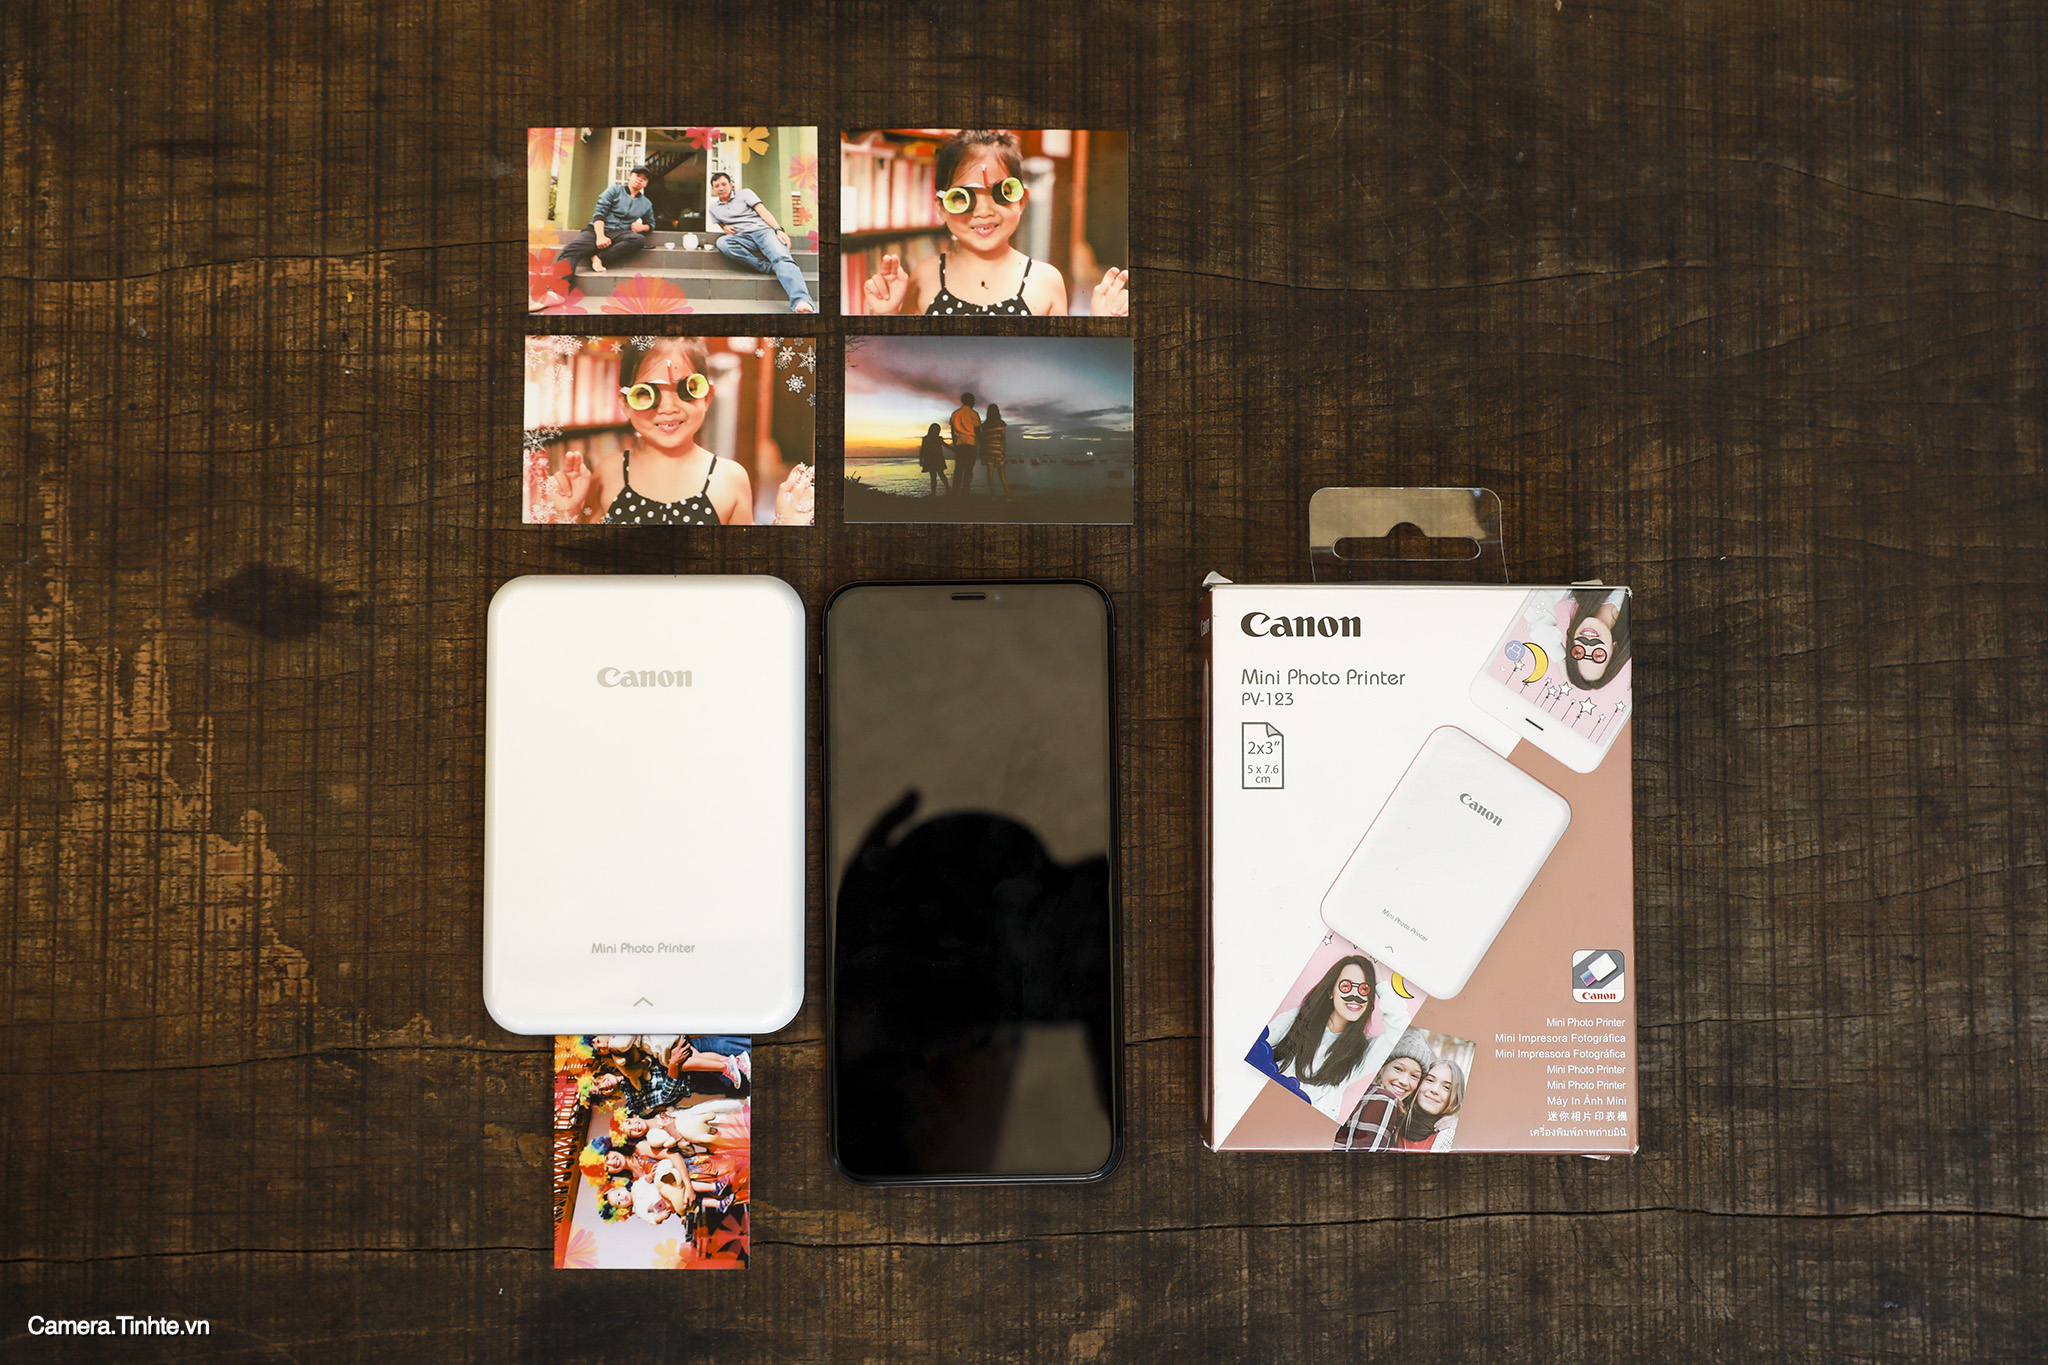 Thử in ảnh bằng Canon Mini Photo Printer cho điện thoại: rất nhanh gọn, chất lượng bản in đẹp